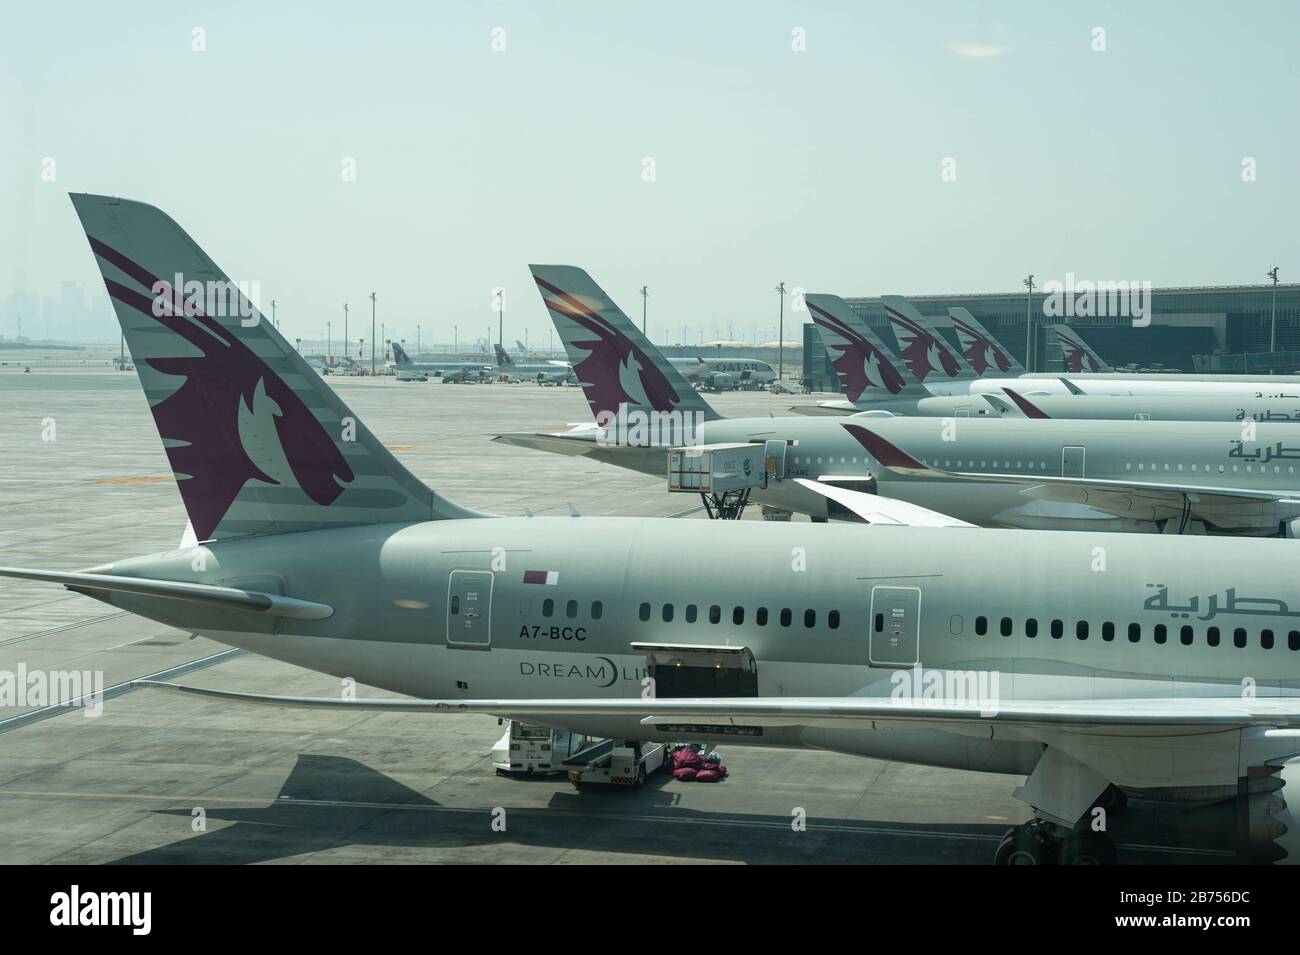 05.06.2019, Doha, Qatar - Qatar Airways passenger aircraft at ...